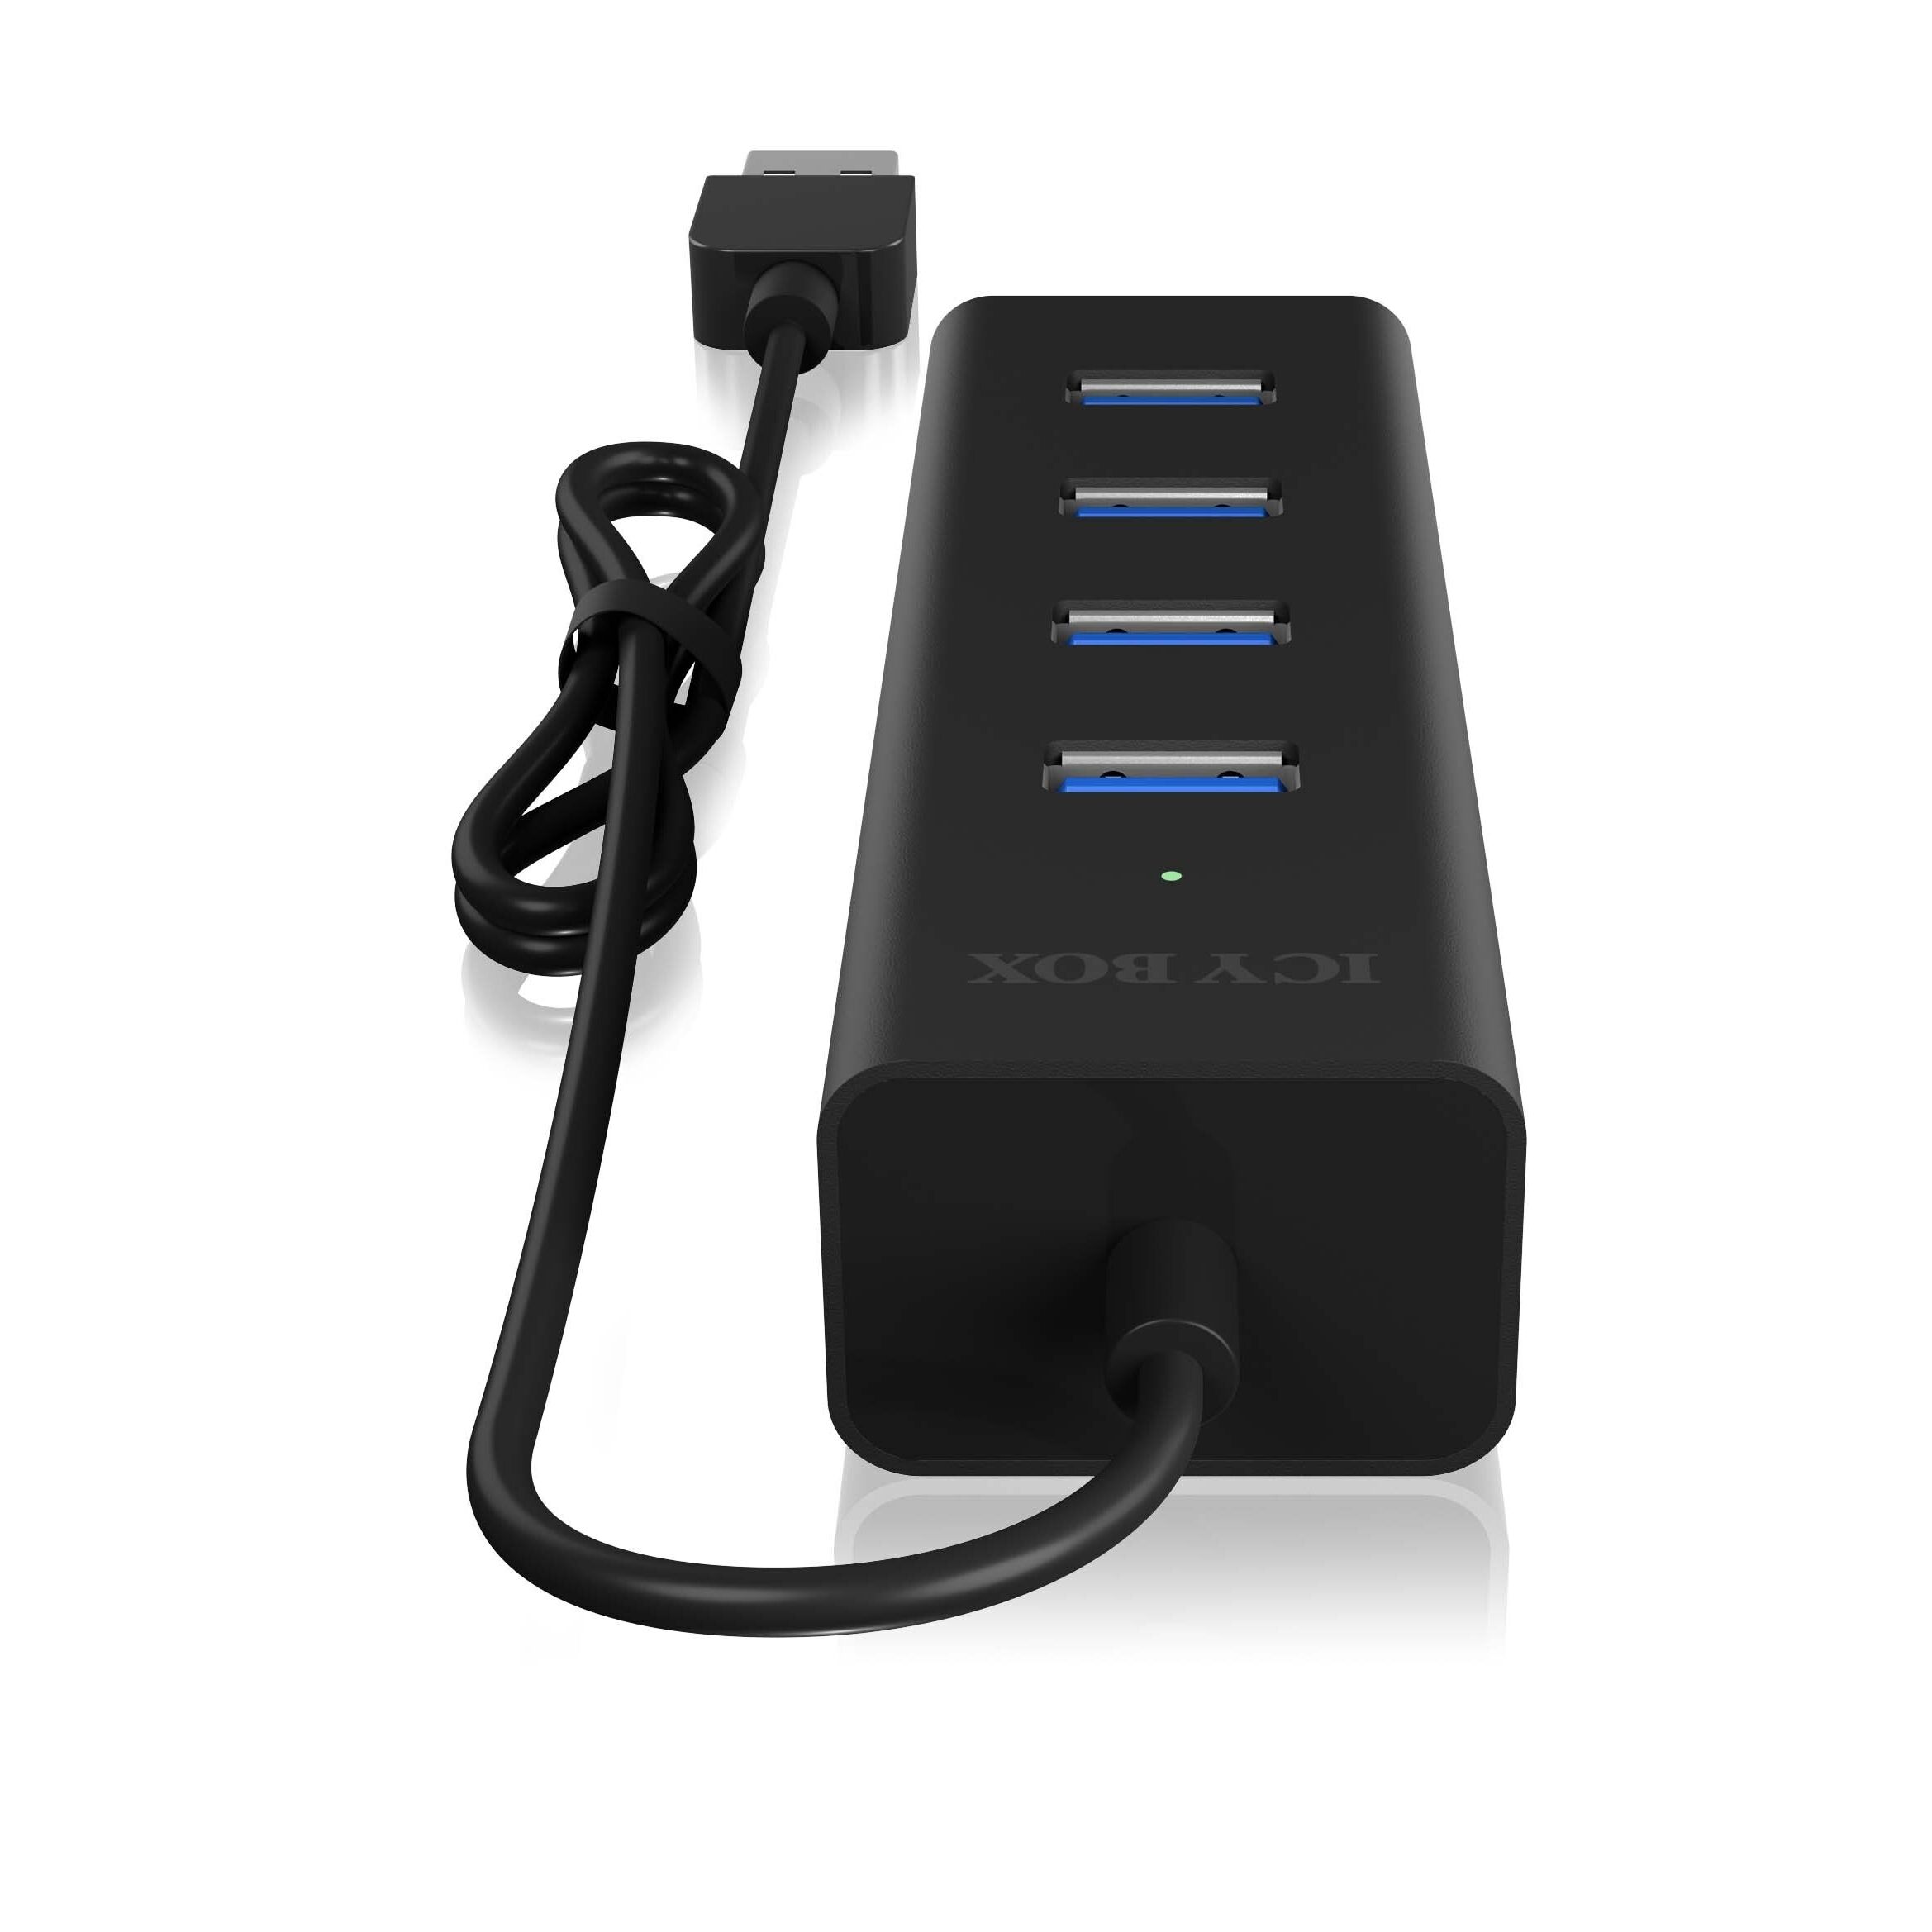 ICY BOX - 4 Port USB 3.0 Hub